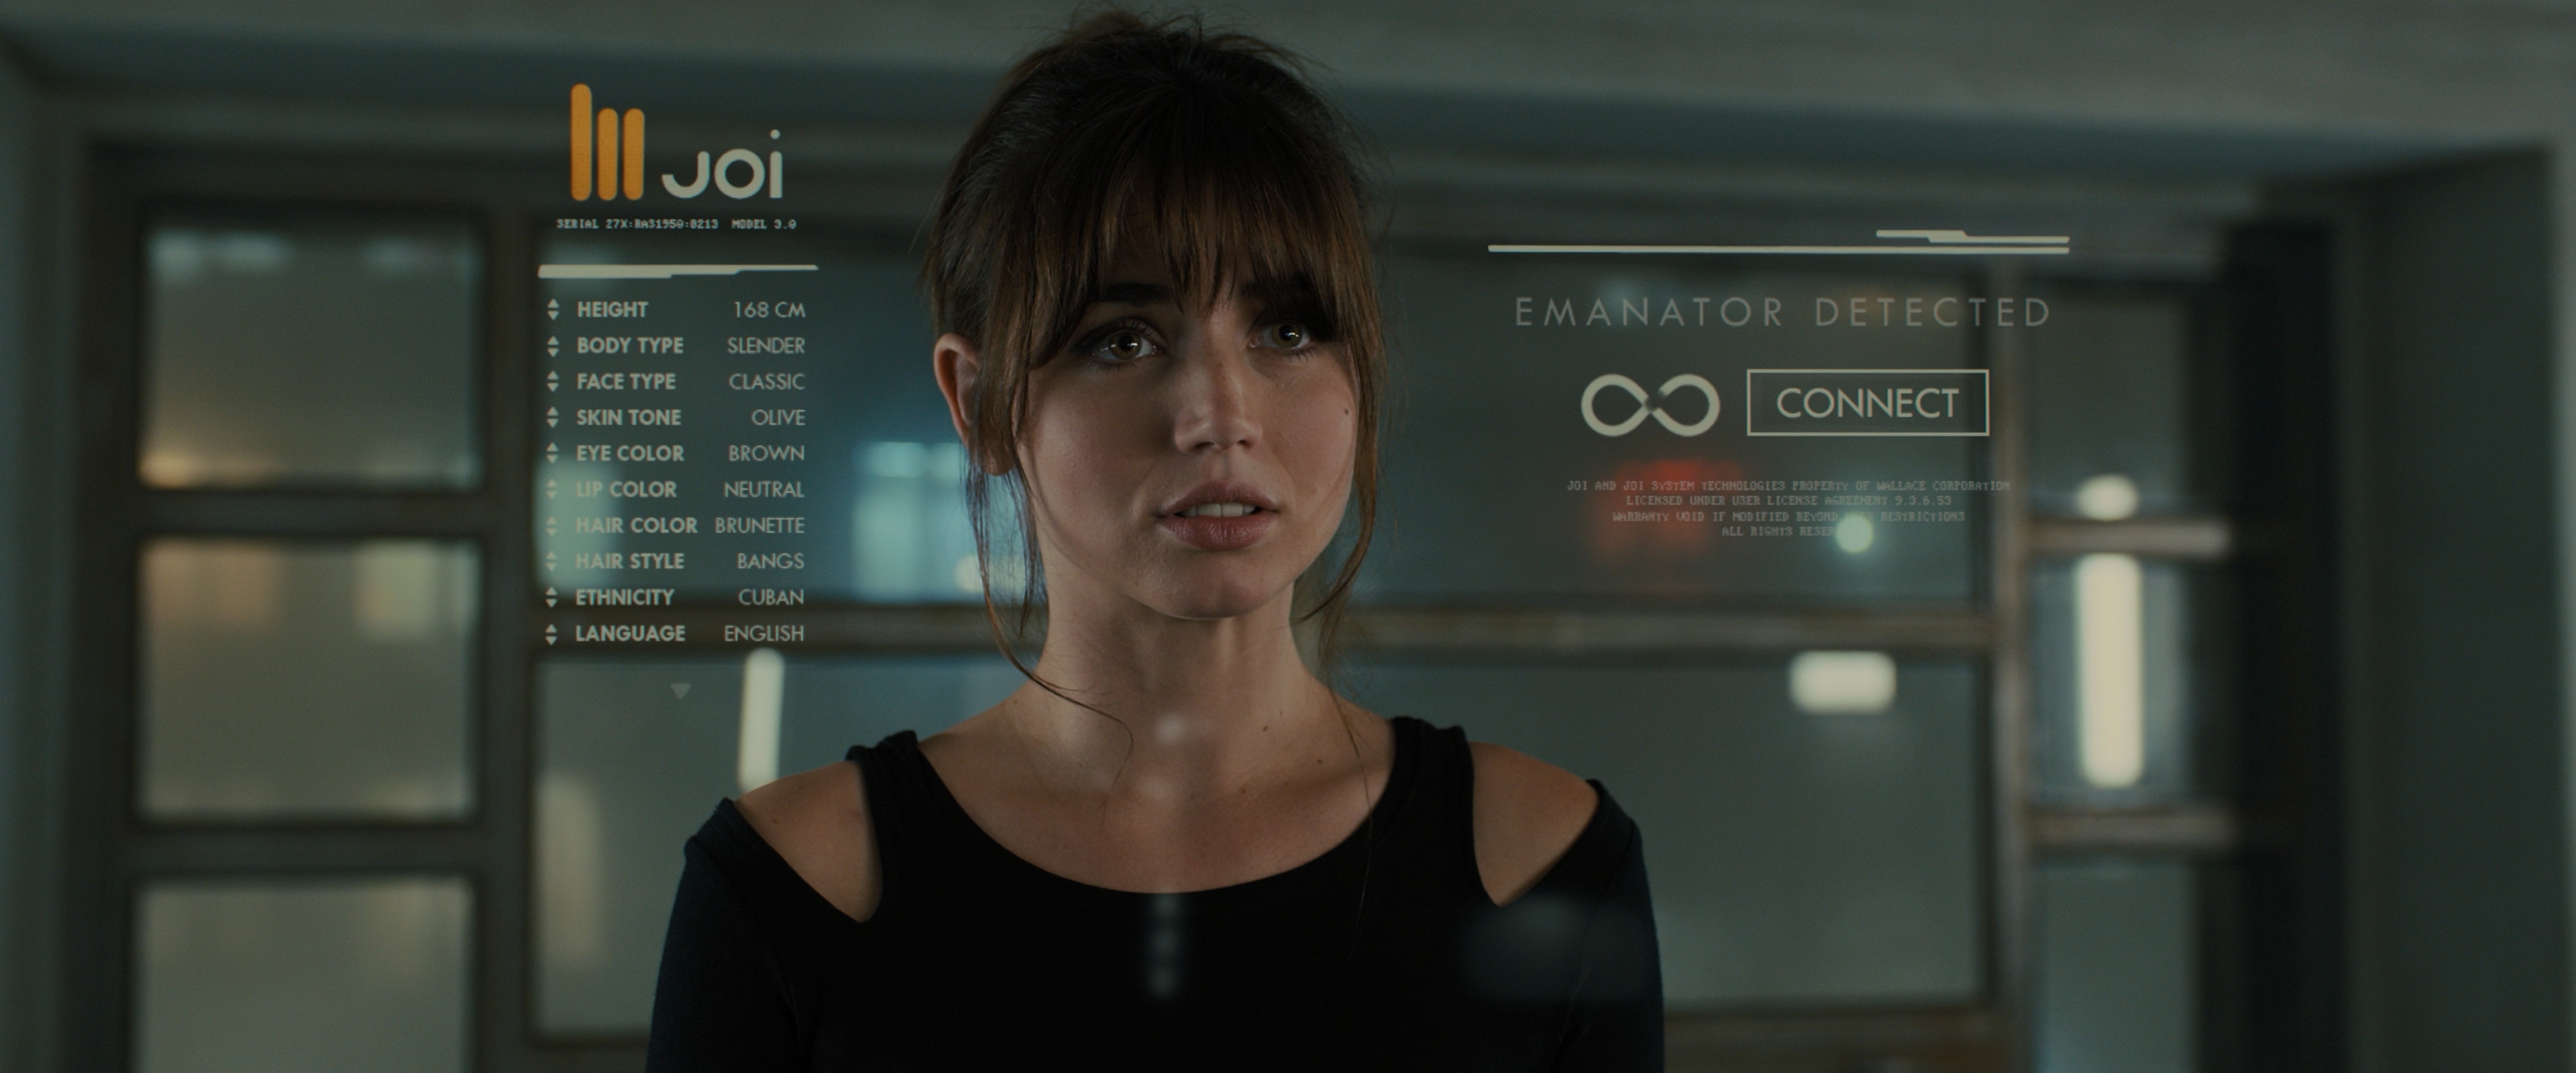 Adorable Ana de Armas as Joi from Blade Runner 2049